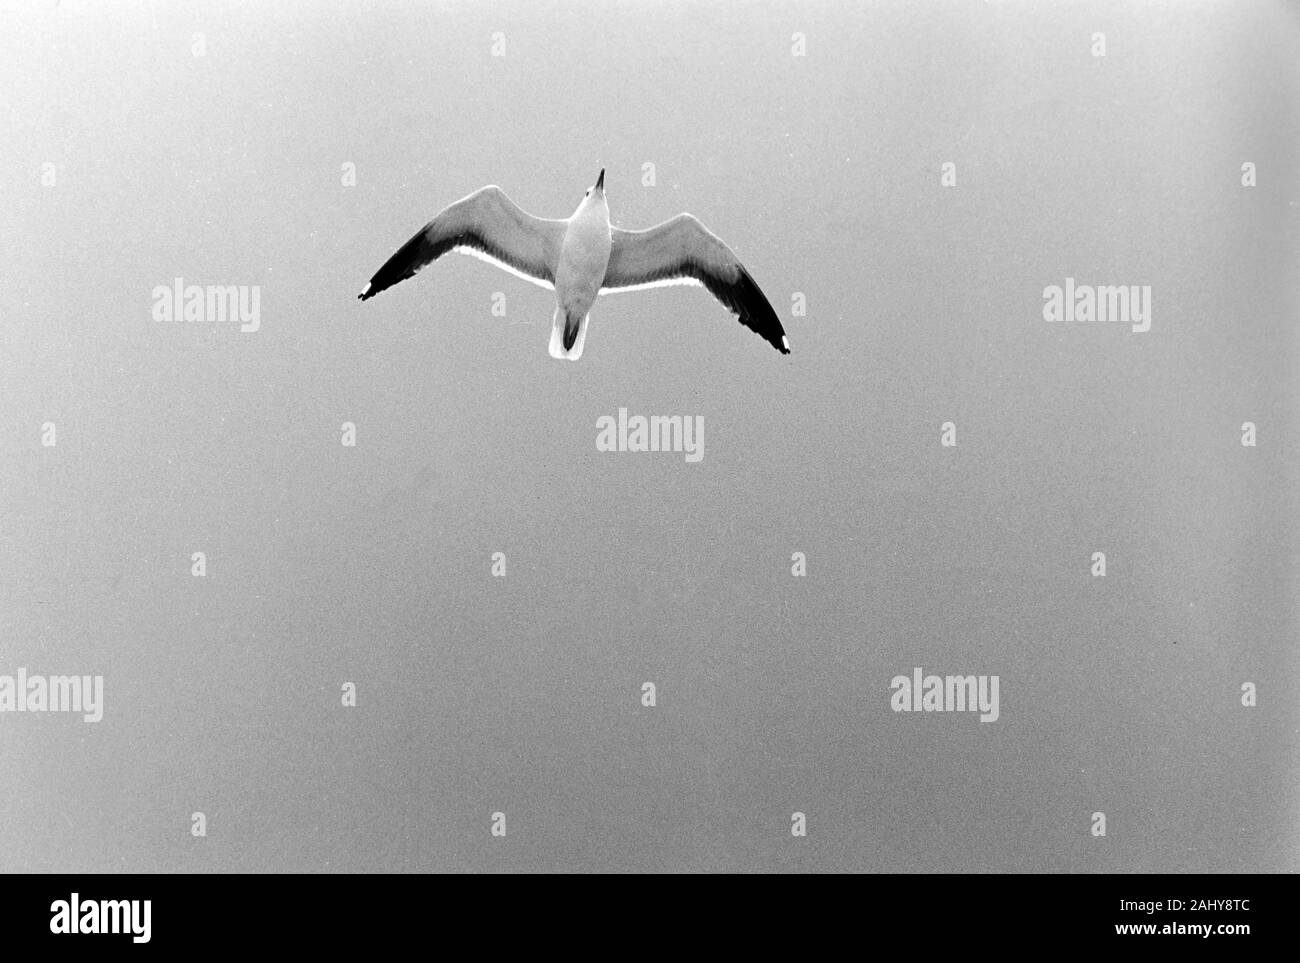 Möwe fliegen am Heck der Prinzessin Christina während Fahrt nach Göteborg, Schweden, 1960er. Seagull fly at the tail of Princess Christina while driving to Gothenburg, Sweden, 1960s. Stock Photo